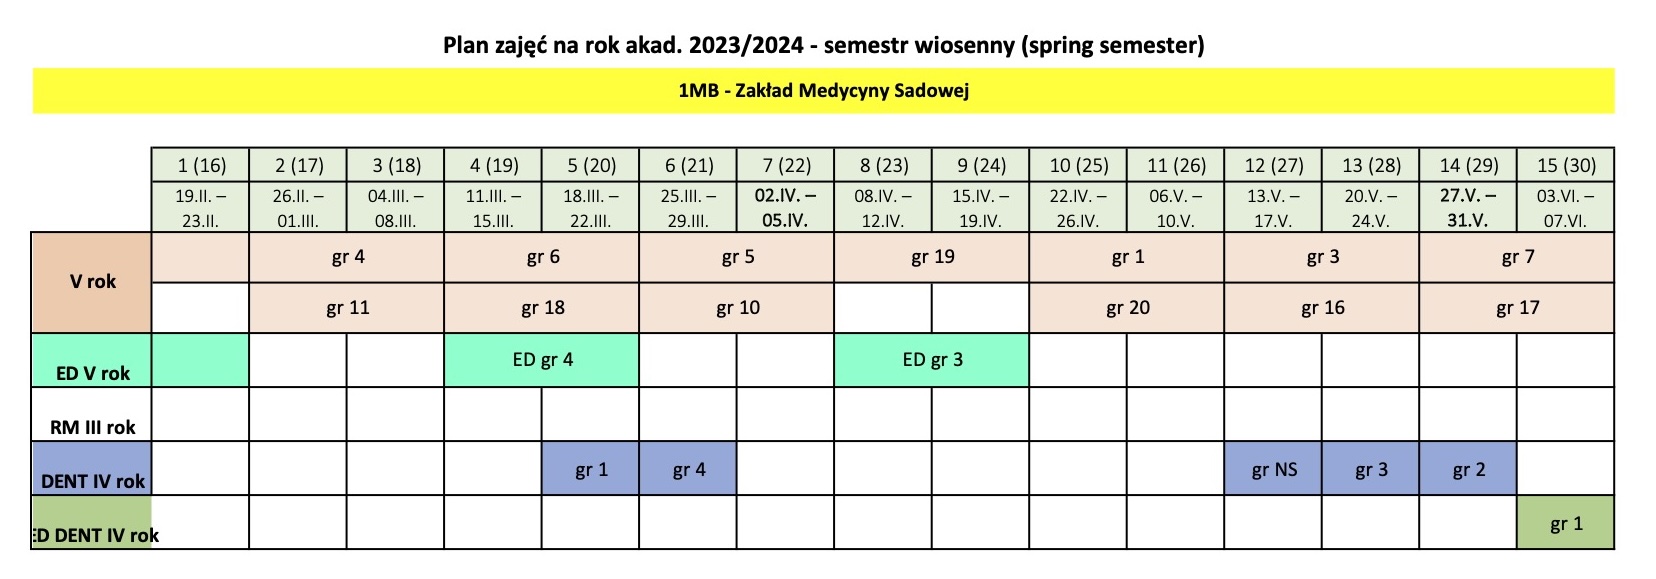 forensic medicine_spring_semester_2023-24